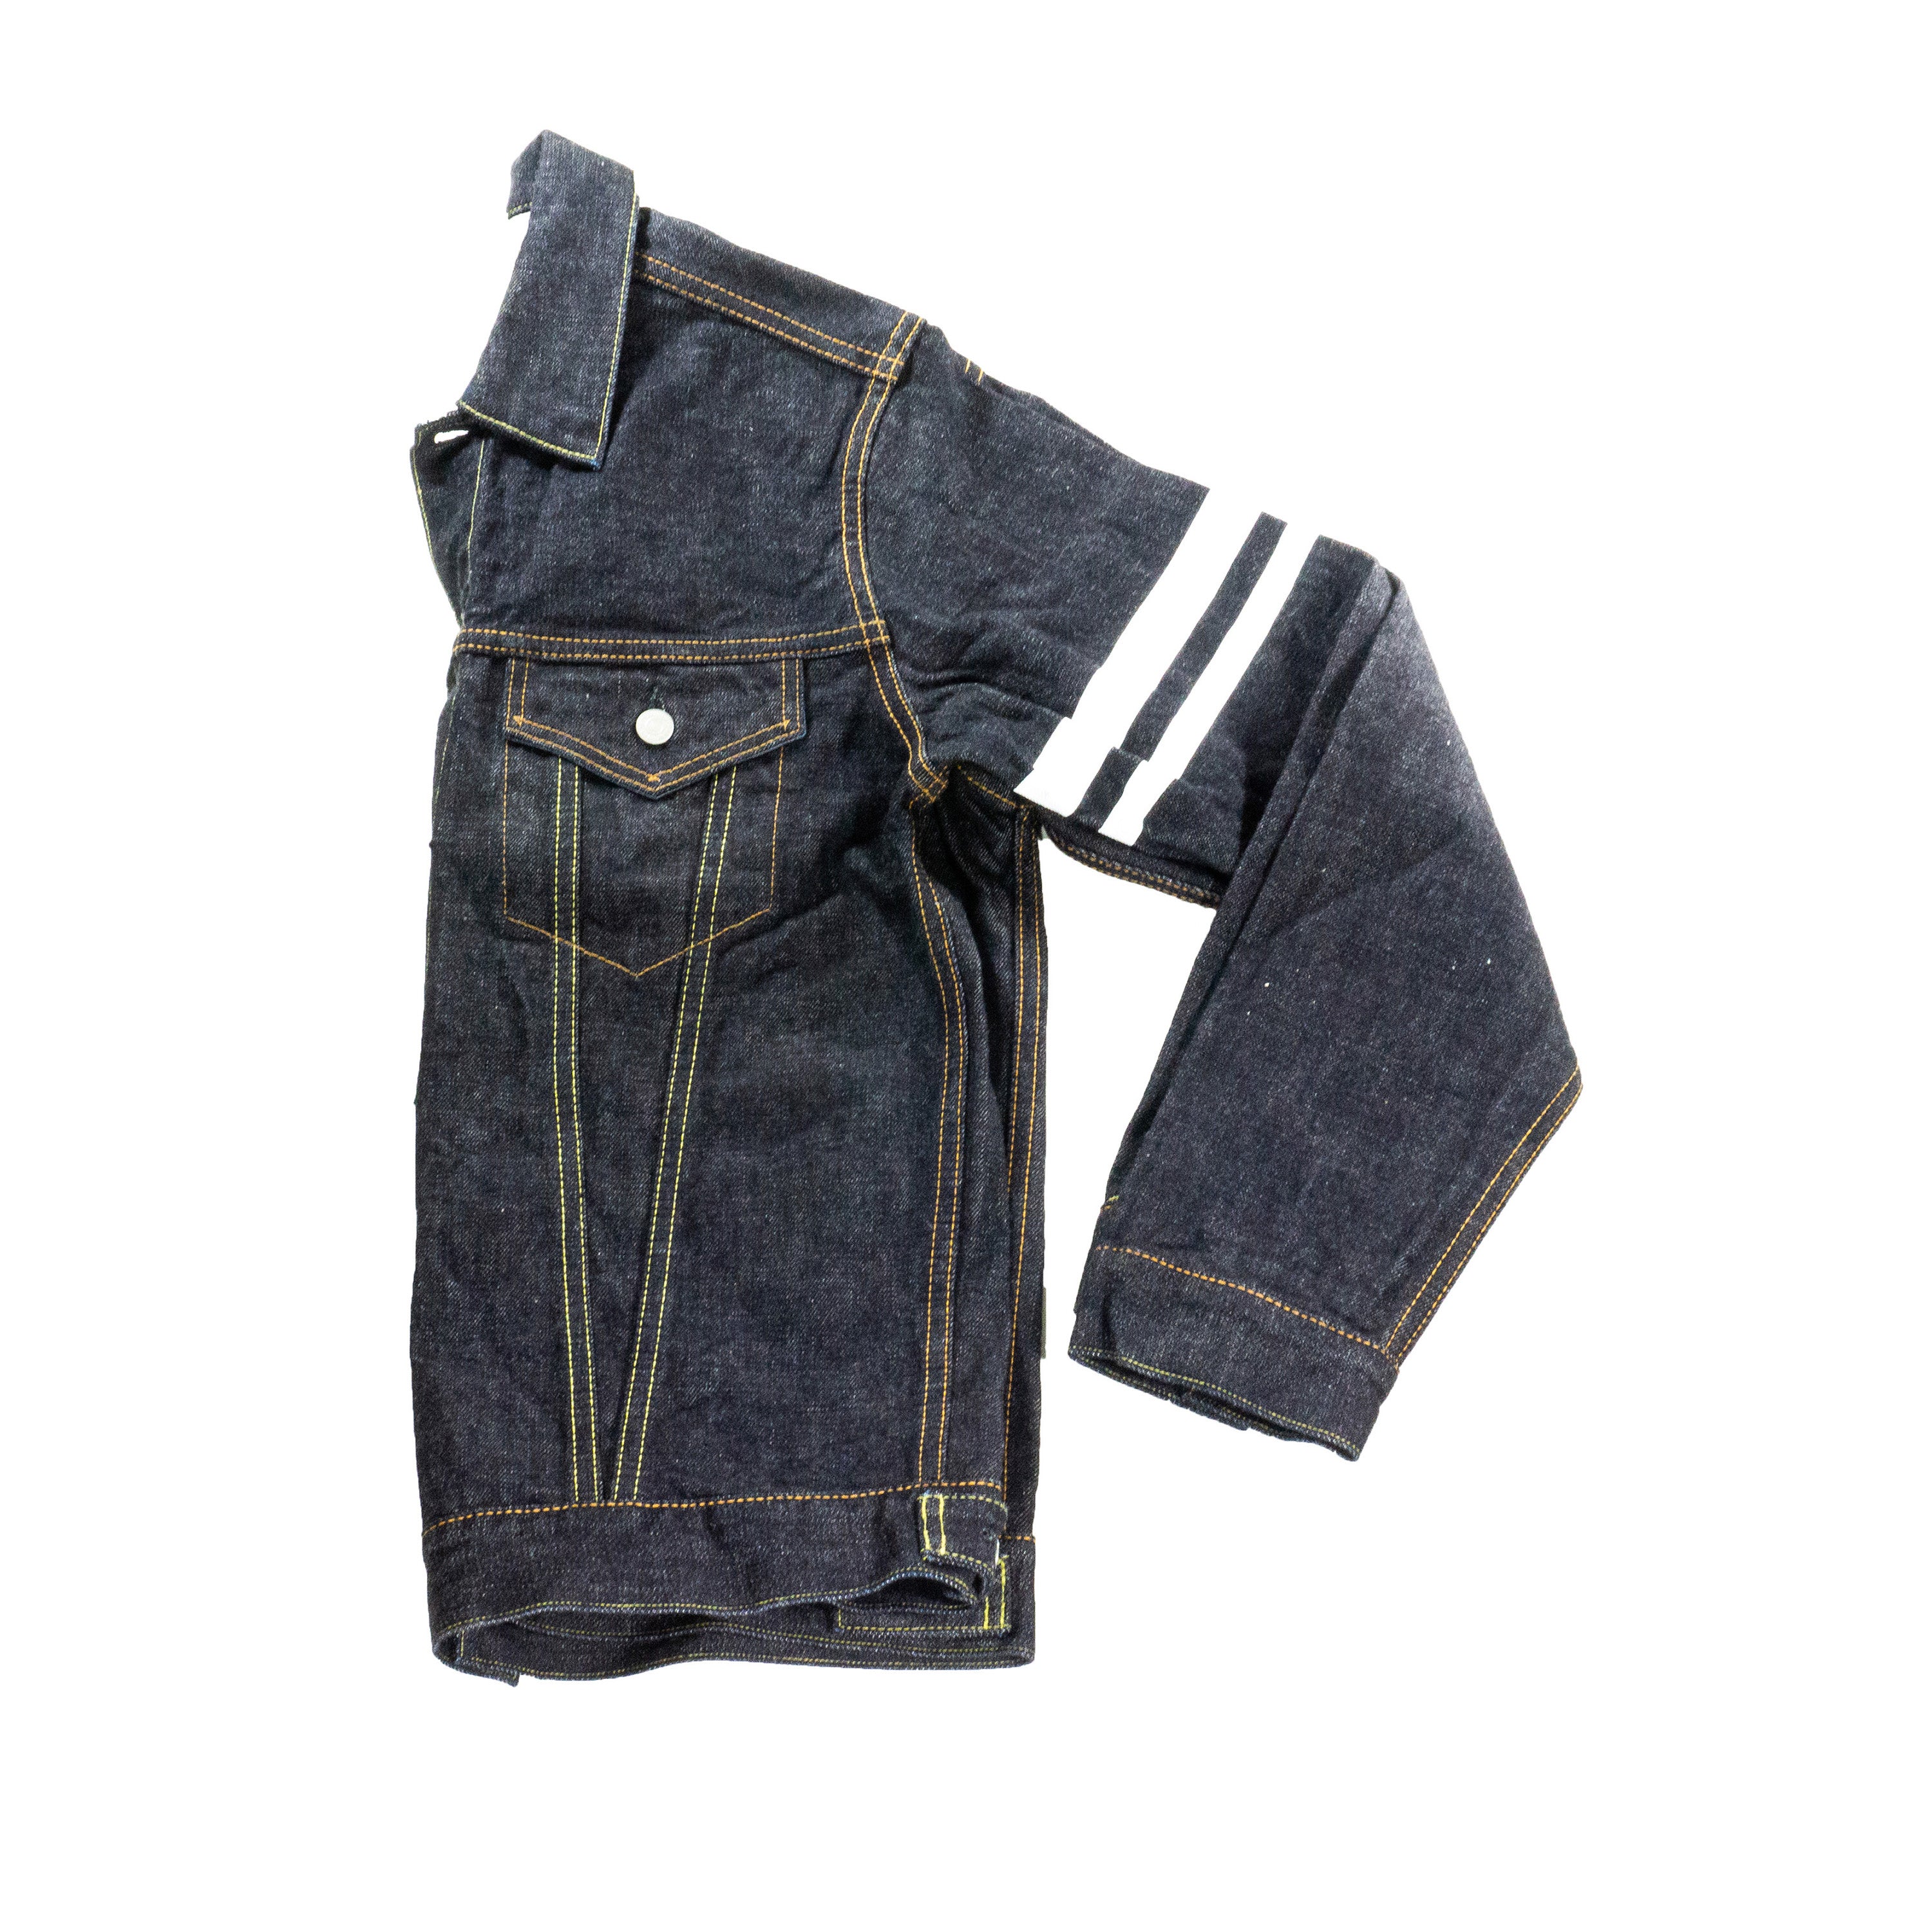 Momotaro Jeans $425 NWT Indigo Blue Denim 